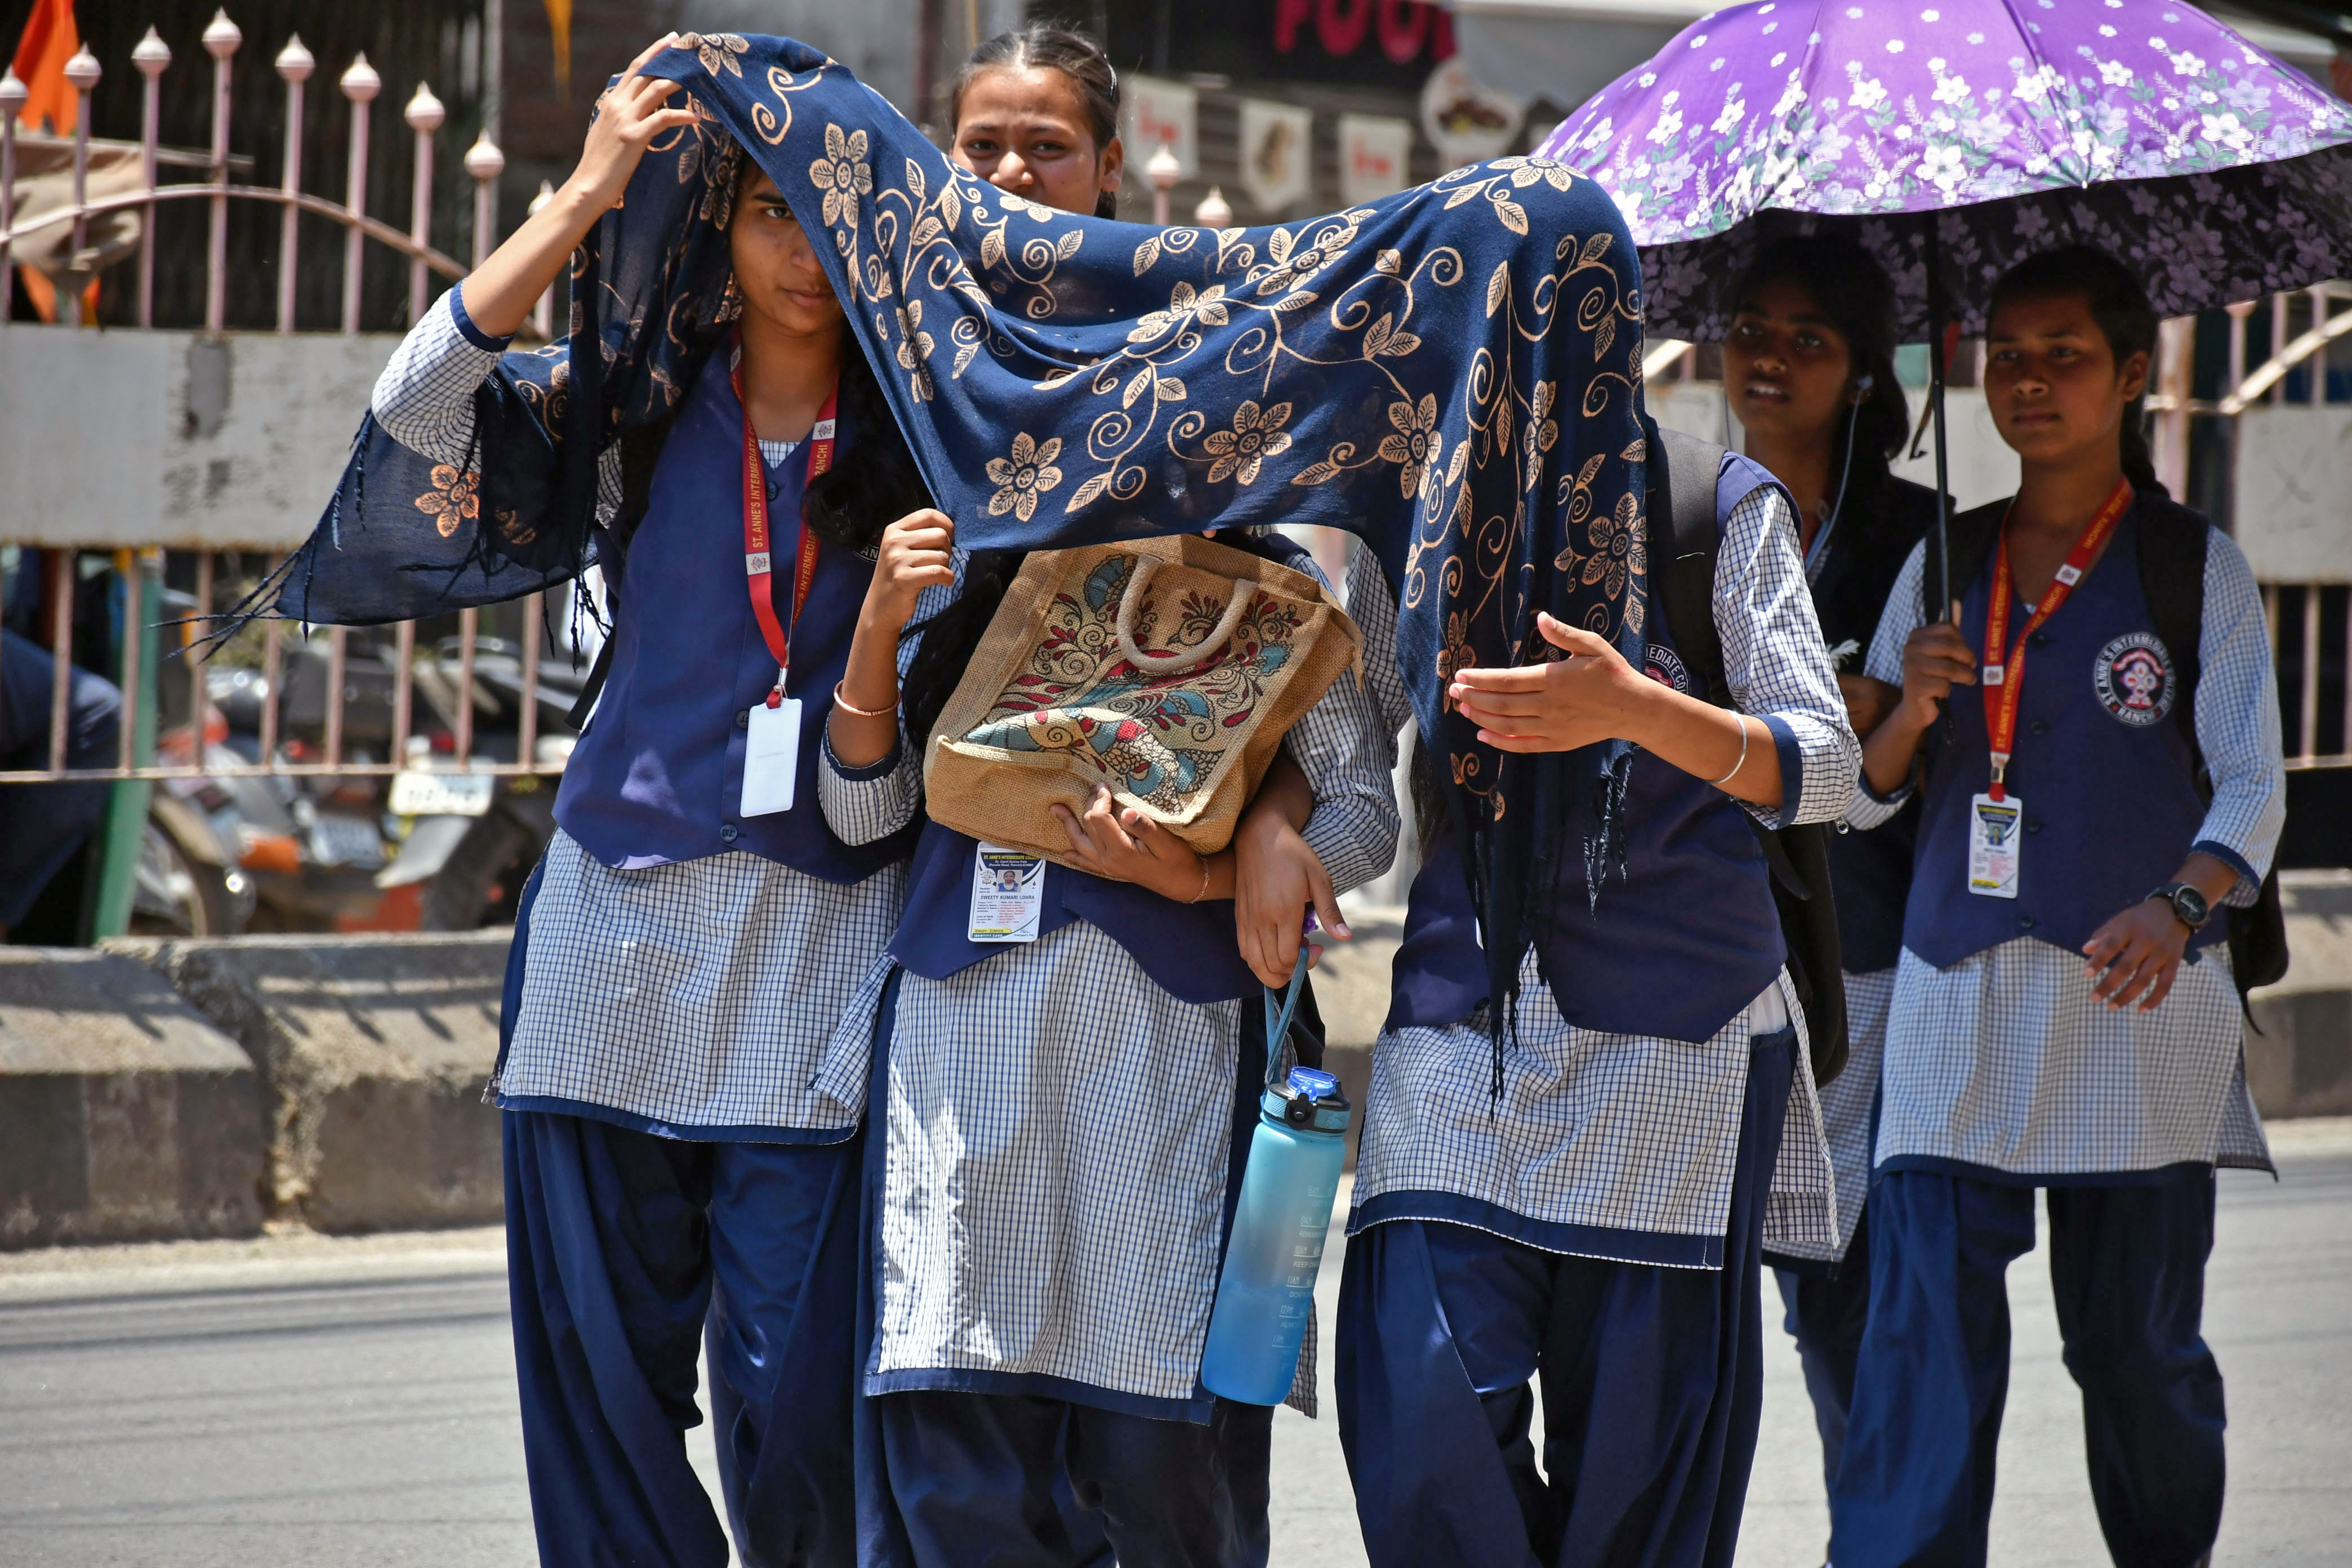 Schools-Colleges Closed: भीषण गर्मी के चलते स्कूल-कॉलेज बंद, मुख्यमंत्री ने जारी
किया आदेश